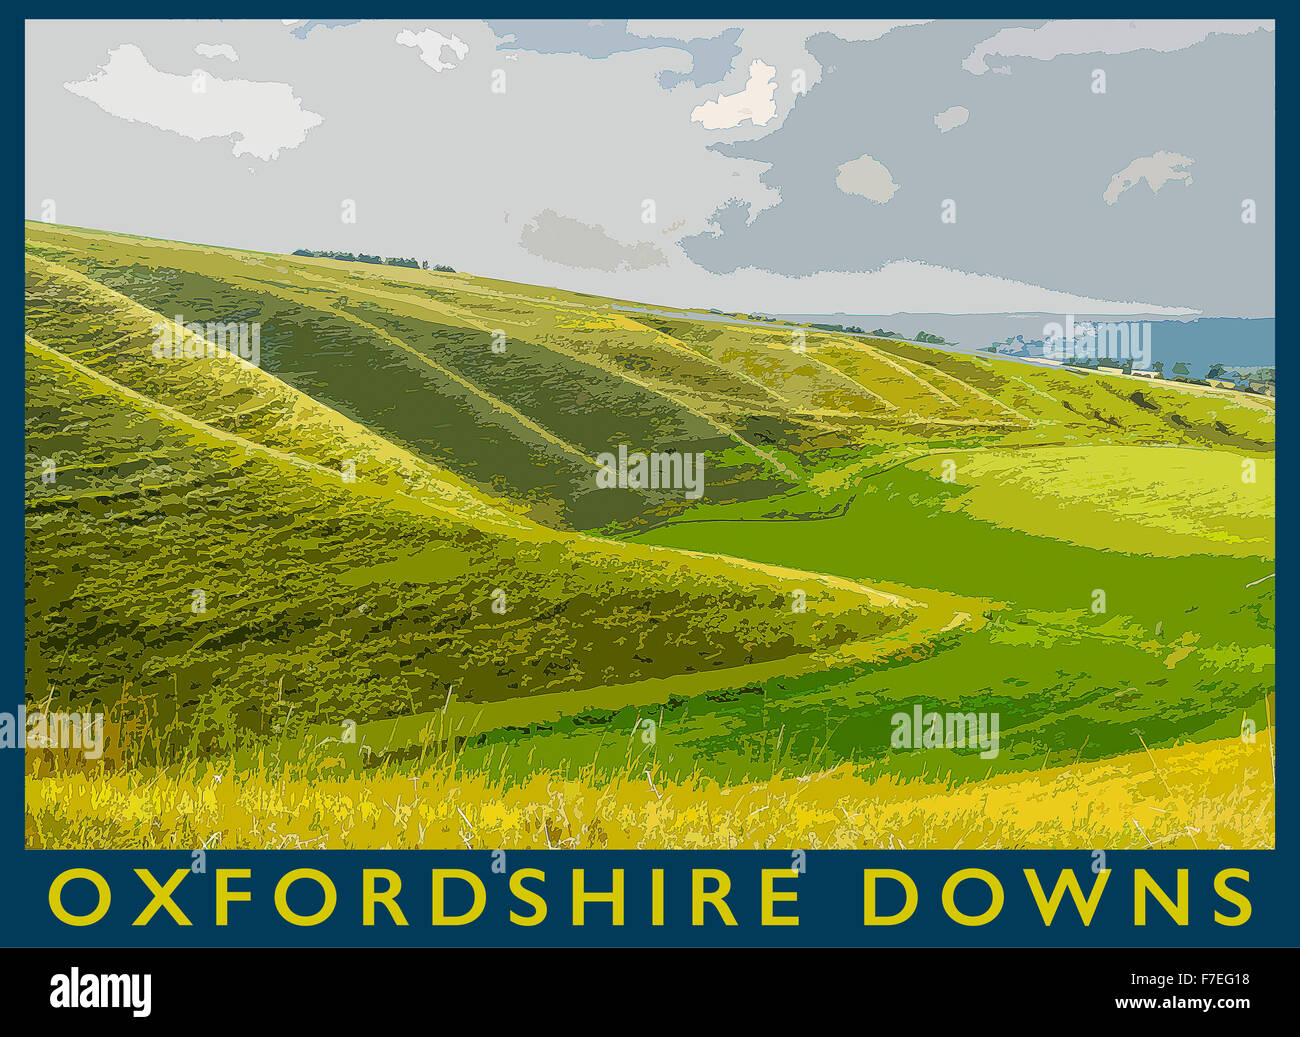 Ein Plakat Stil Illustration aus einem Foto der Oxfordshire Downs in der Nähe von Uffington, Oxfordshire, England, UK Stockfoto